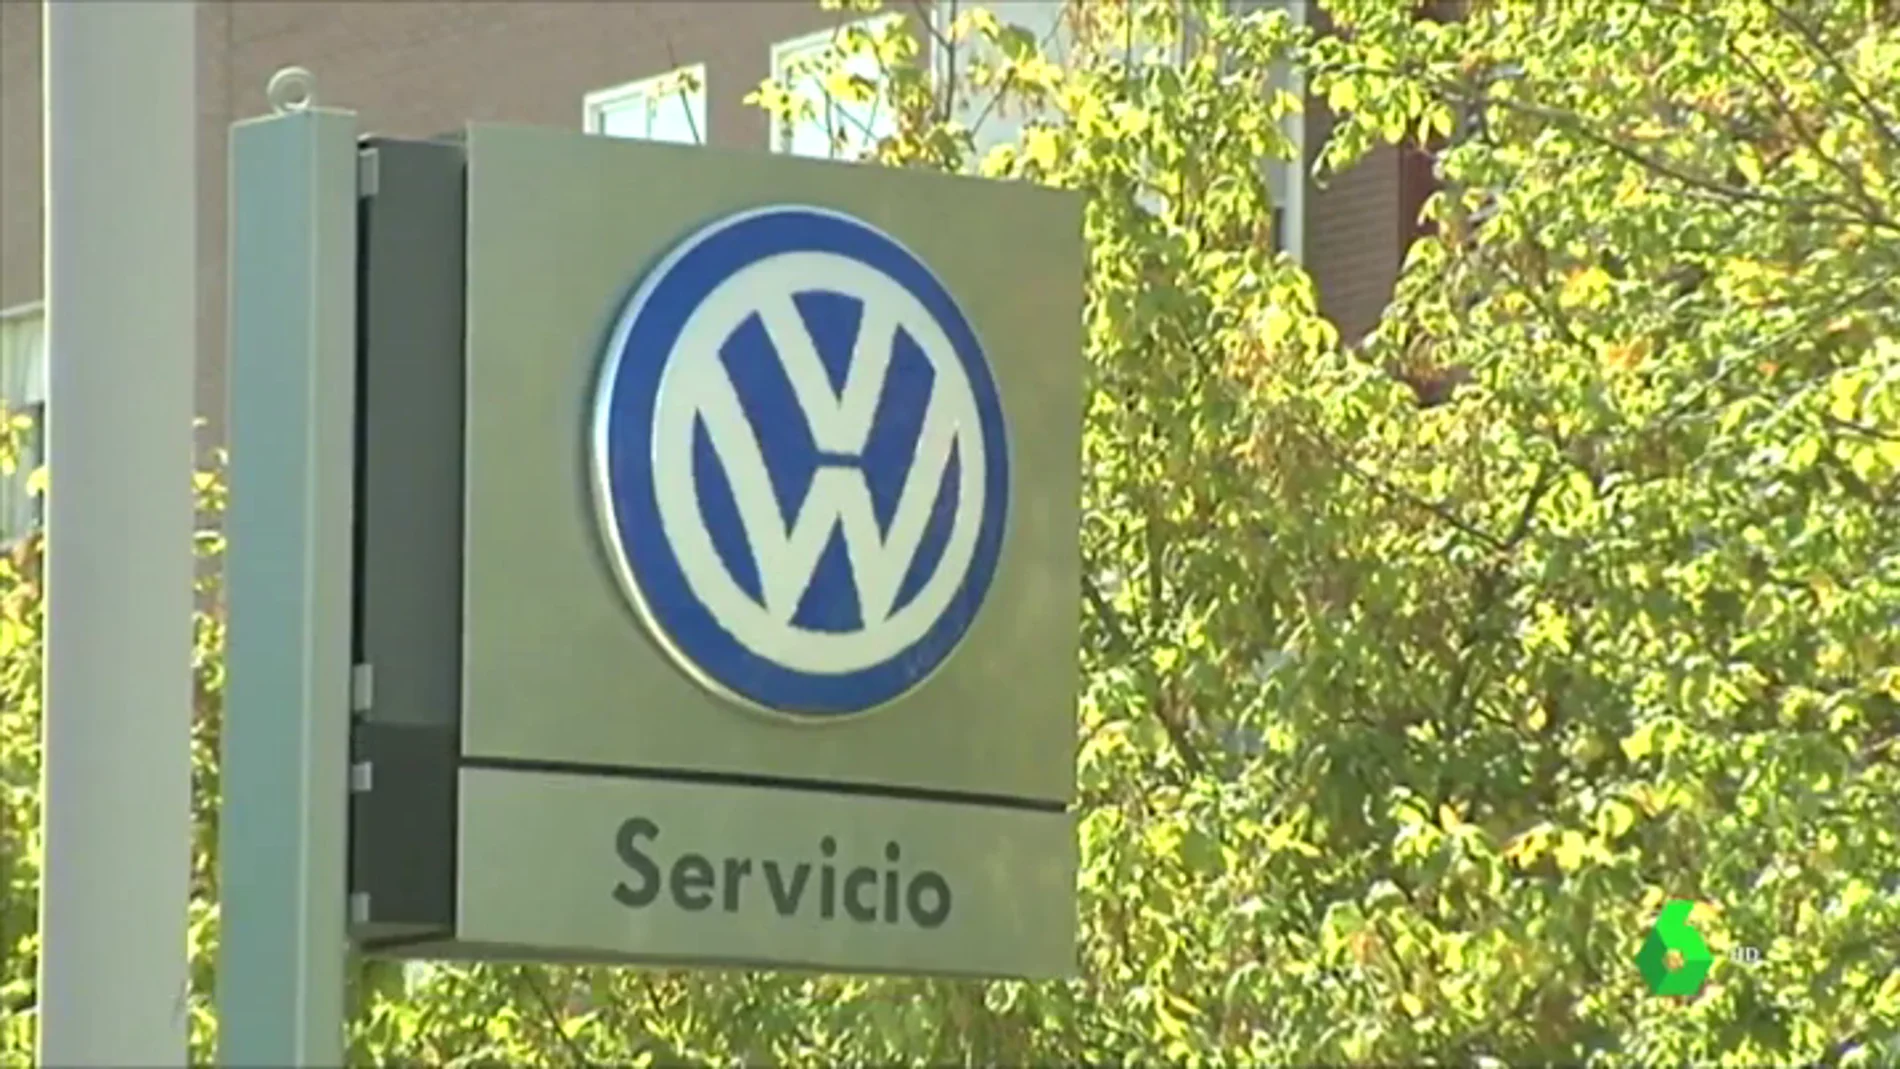 Termina el plazo para sumarse a la demanda colectiva contra Volkswagen por el llamado 'Dieselgate'